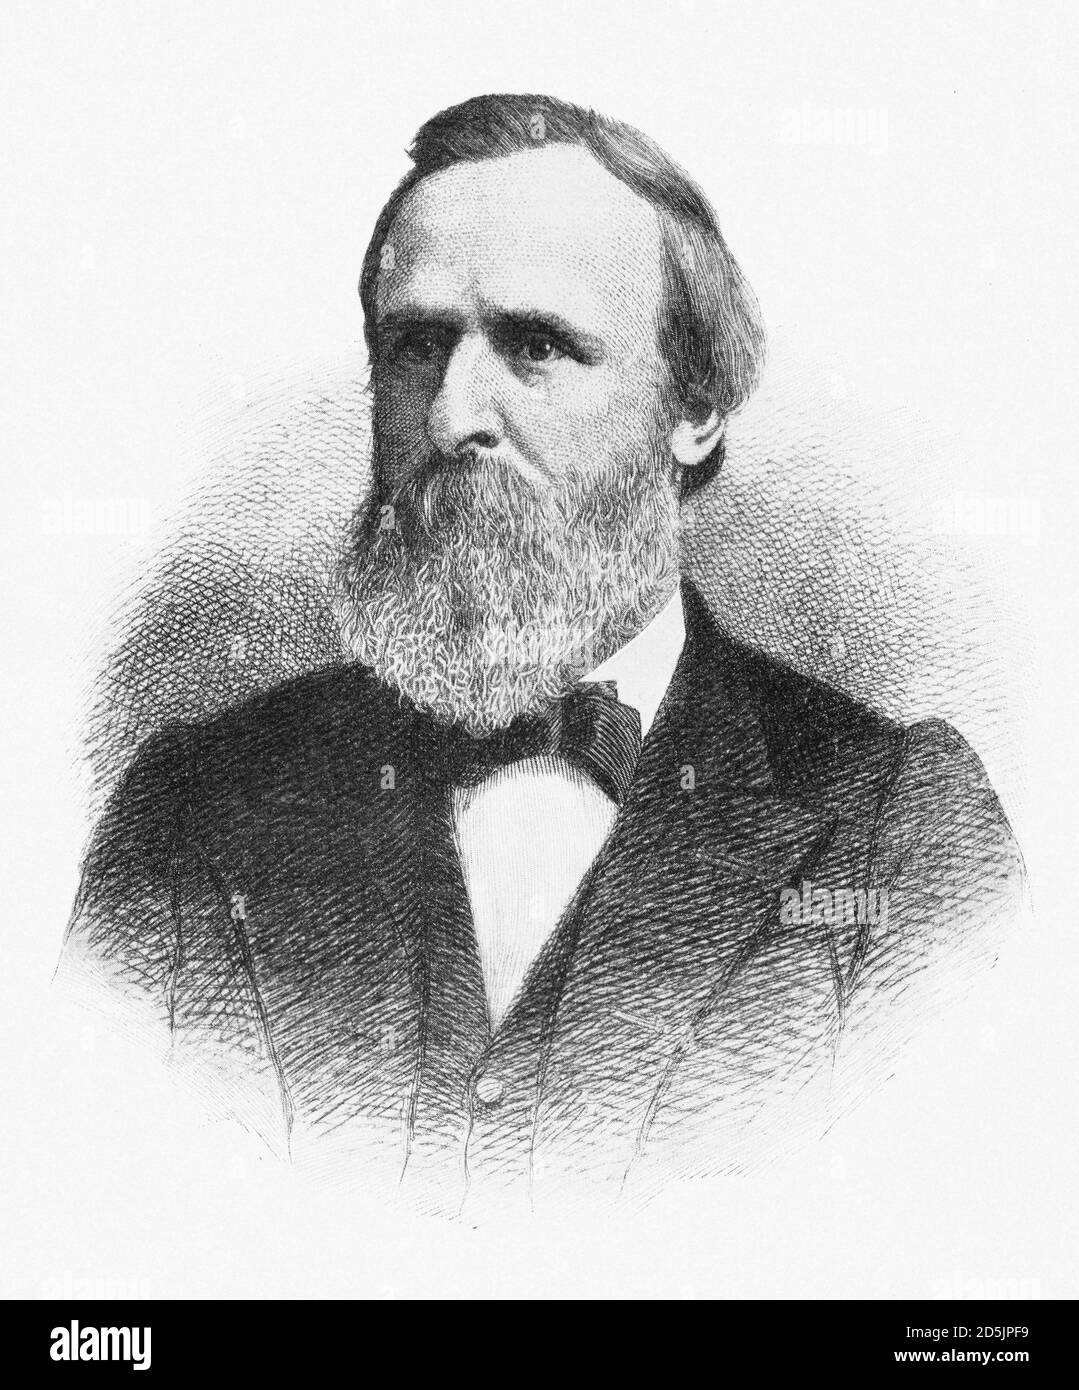 Porträt von Präsident Rutherford Birchard Hayes. Rutherford Birchard Hayes (1822 – 1893) war von 1877 bis 188 der 19. Präsident der Vereinigten Staaten Stockfoto